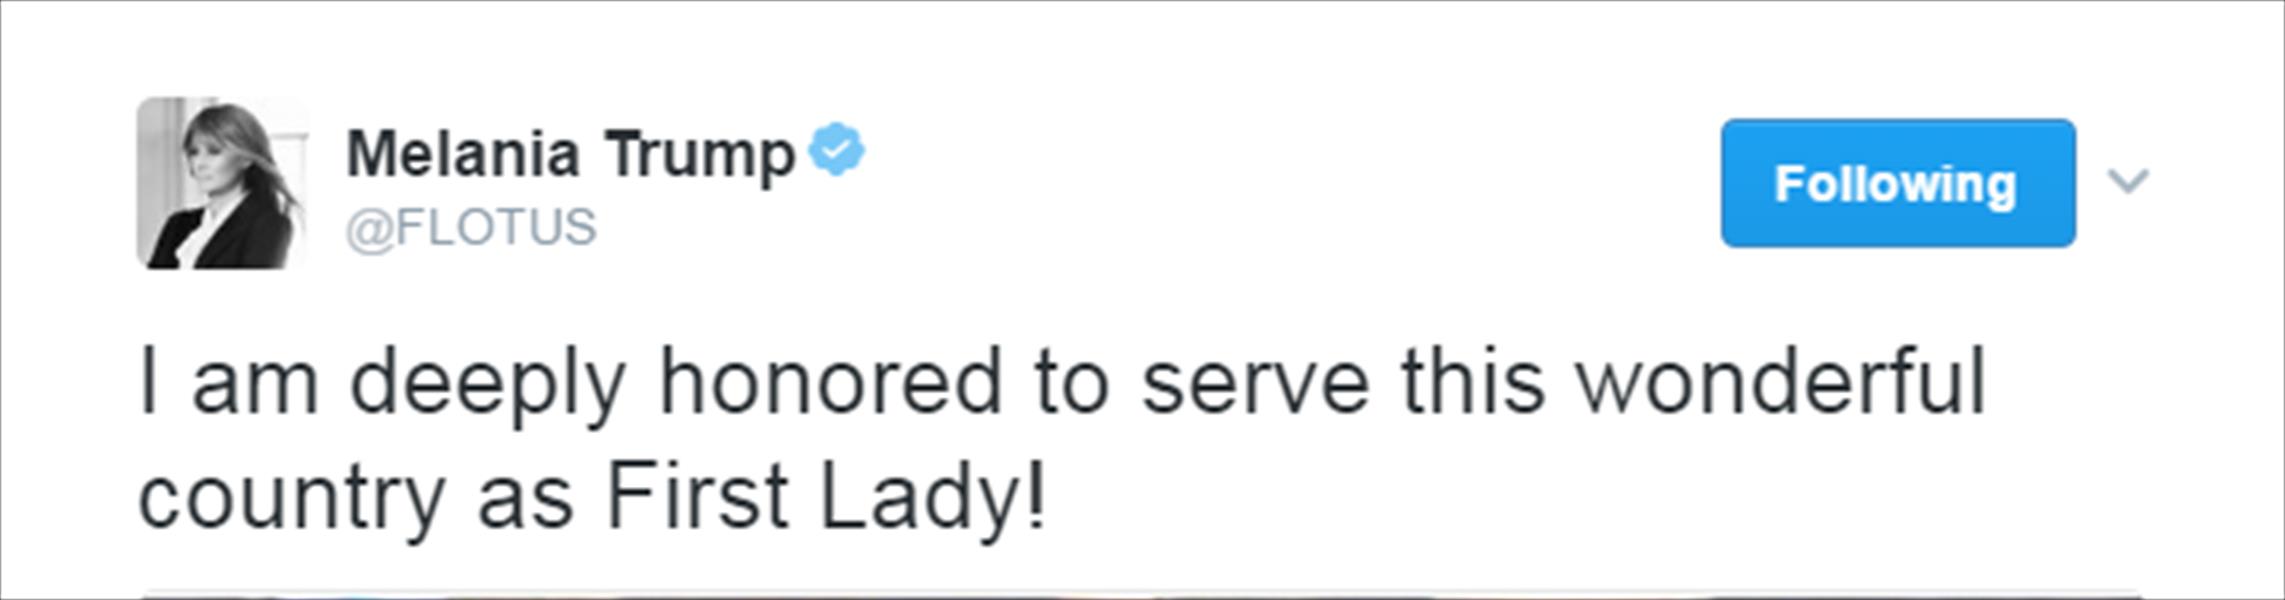 أول تغريدة لميلانيا ترامب من حساب السيدة الأولى